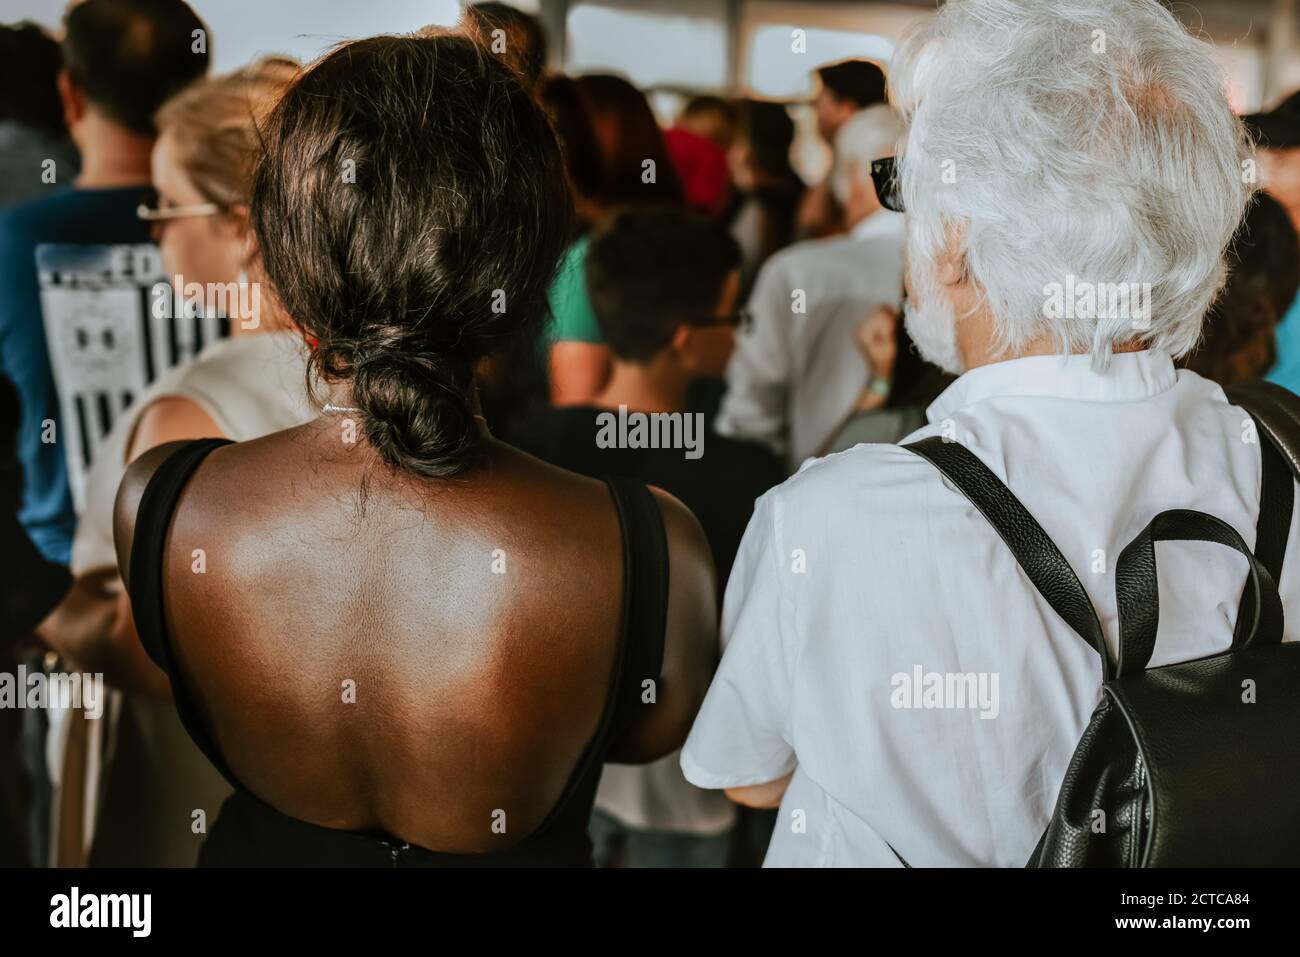 Afroamericani con caucasici insieme; l'anziano europeo si trova accanto ad una donna africana Foto Stock